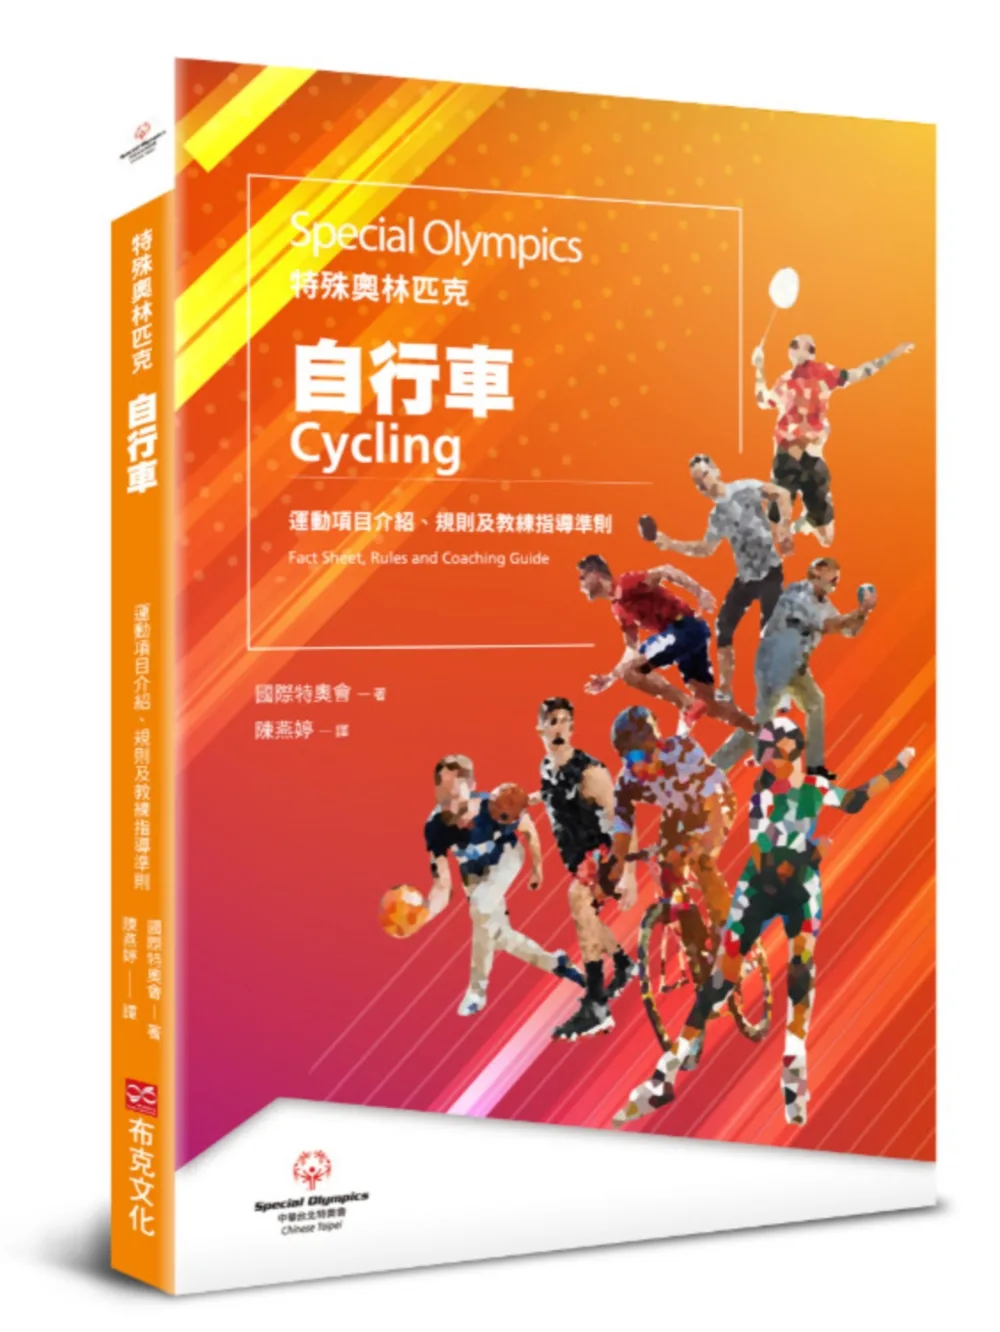 特殊奧林匹克：自行車——運動項目介紹、規格及教練指導準則